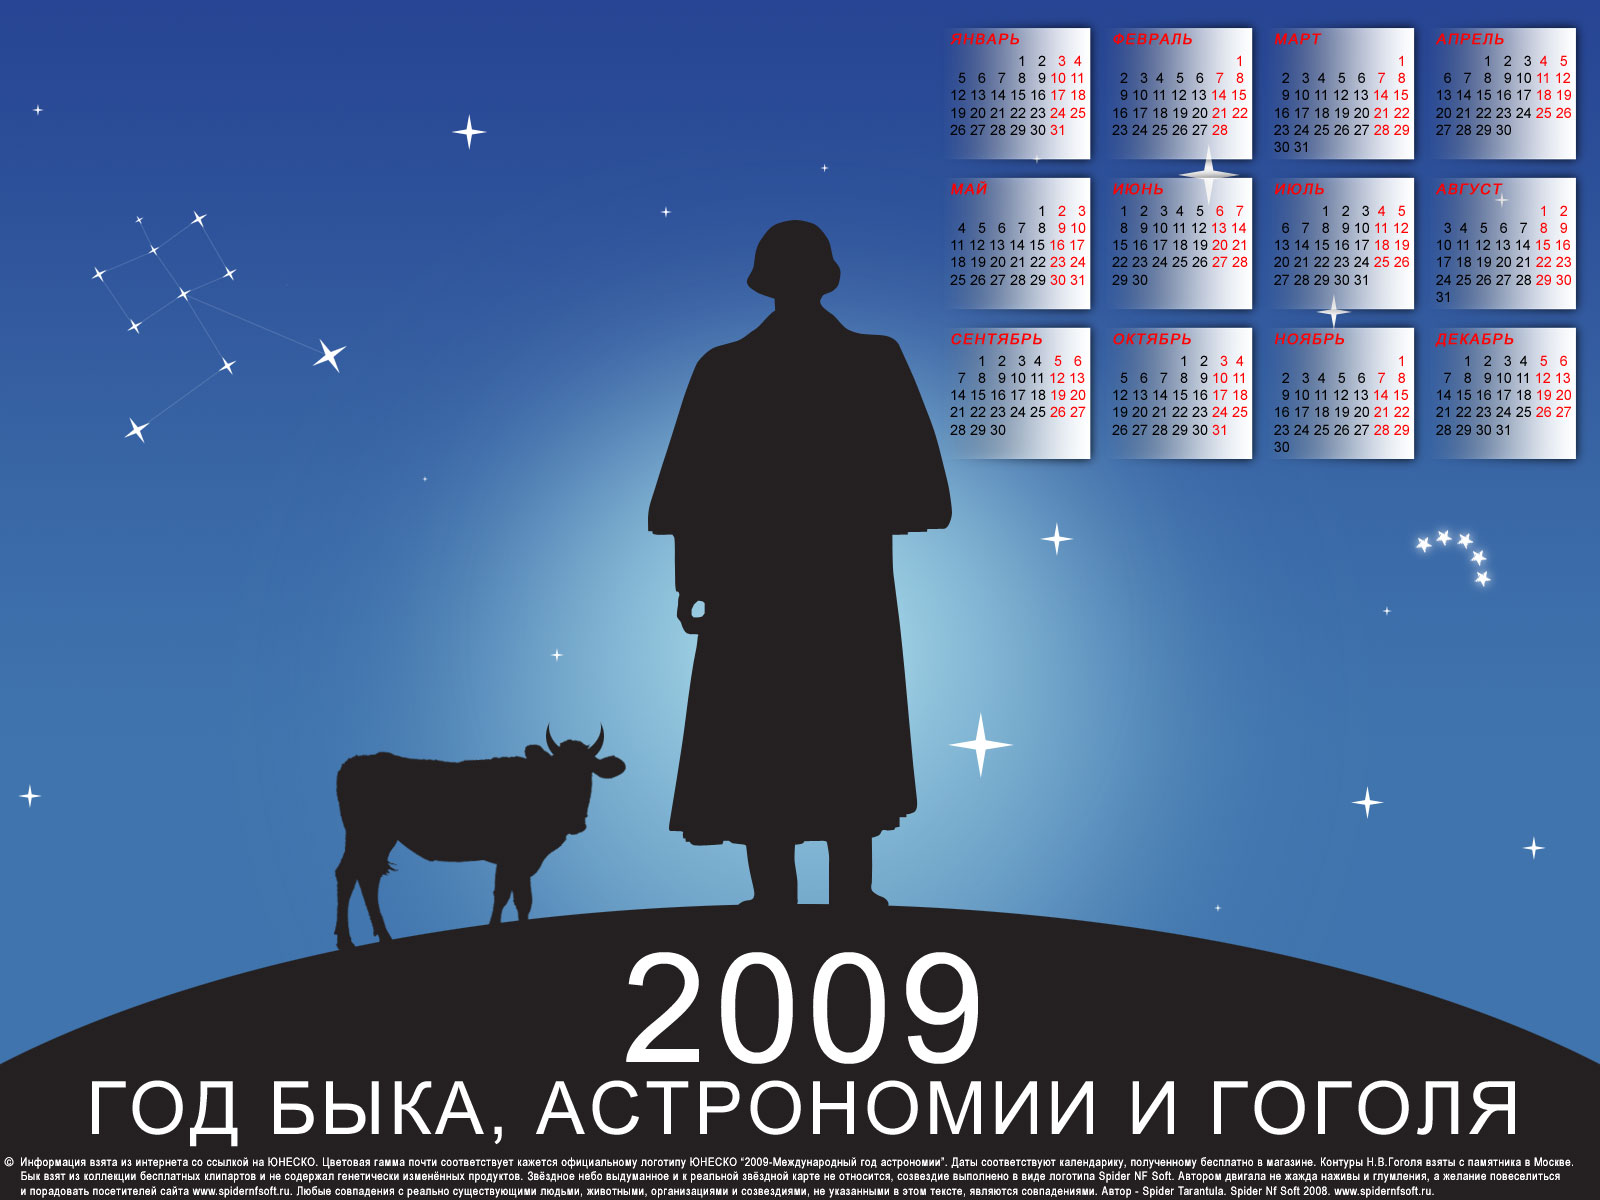 Календарь на 2009 год 1600х1200  Год Б.А.Г'а  календарь 2009 год быка 1600х1200 скачать юмор приколы пародия коллаж арт логотип ЮНЕСКО Международный год астрономии Гоголь силуэт